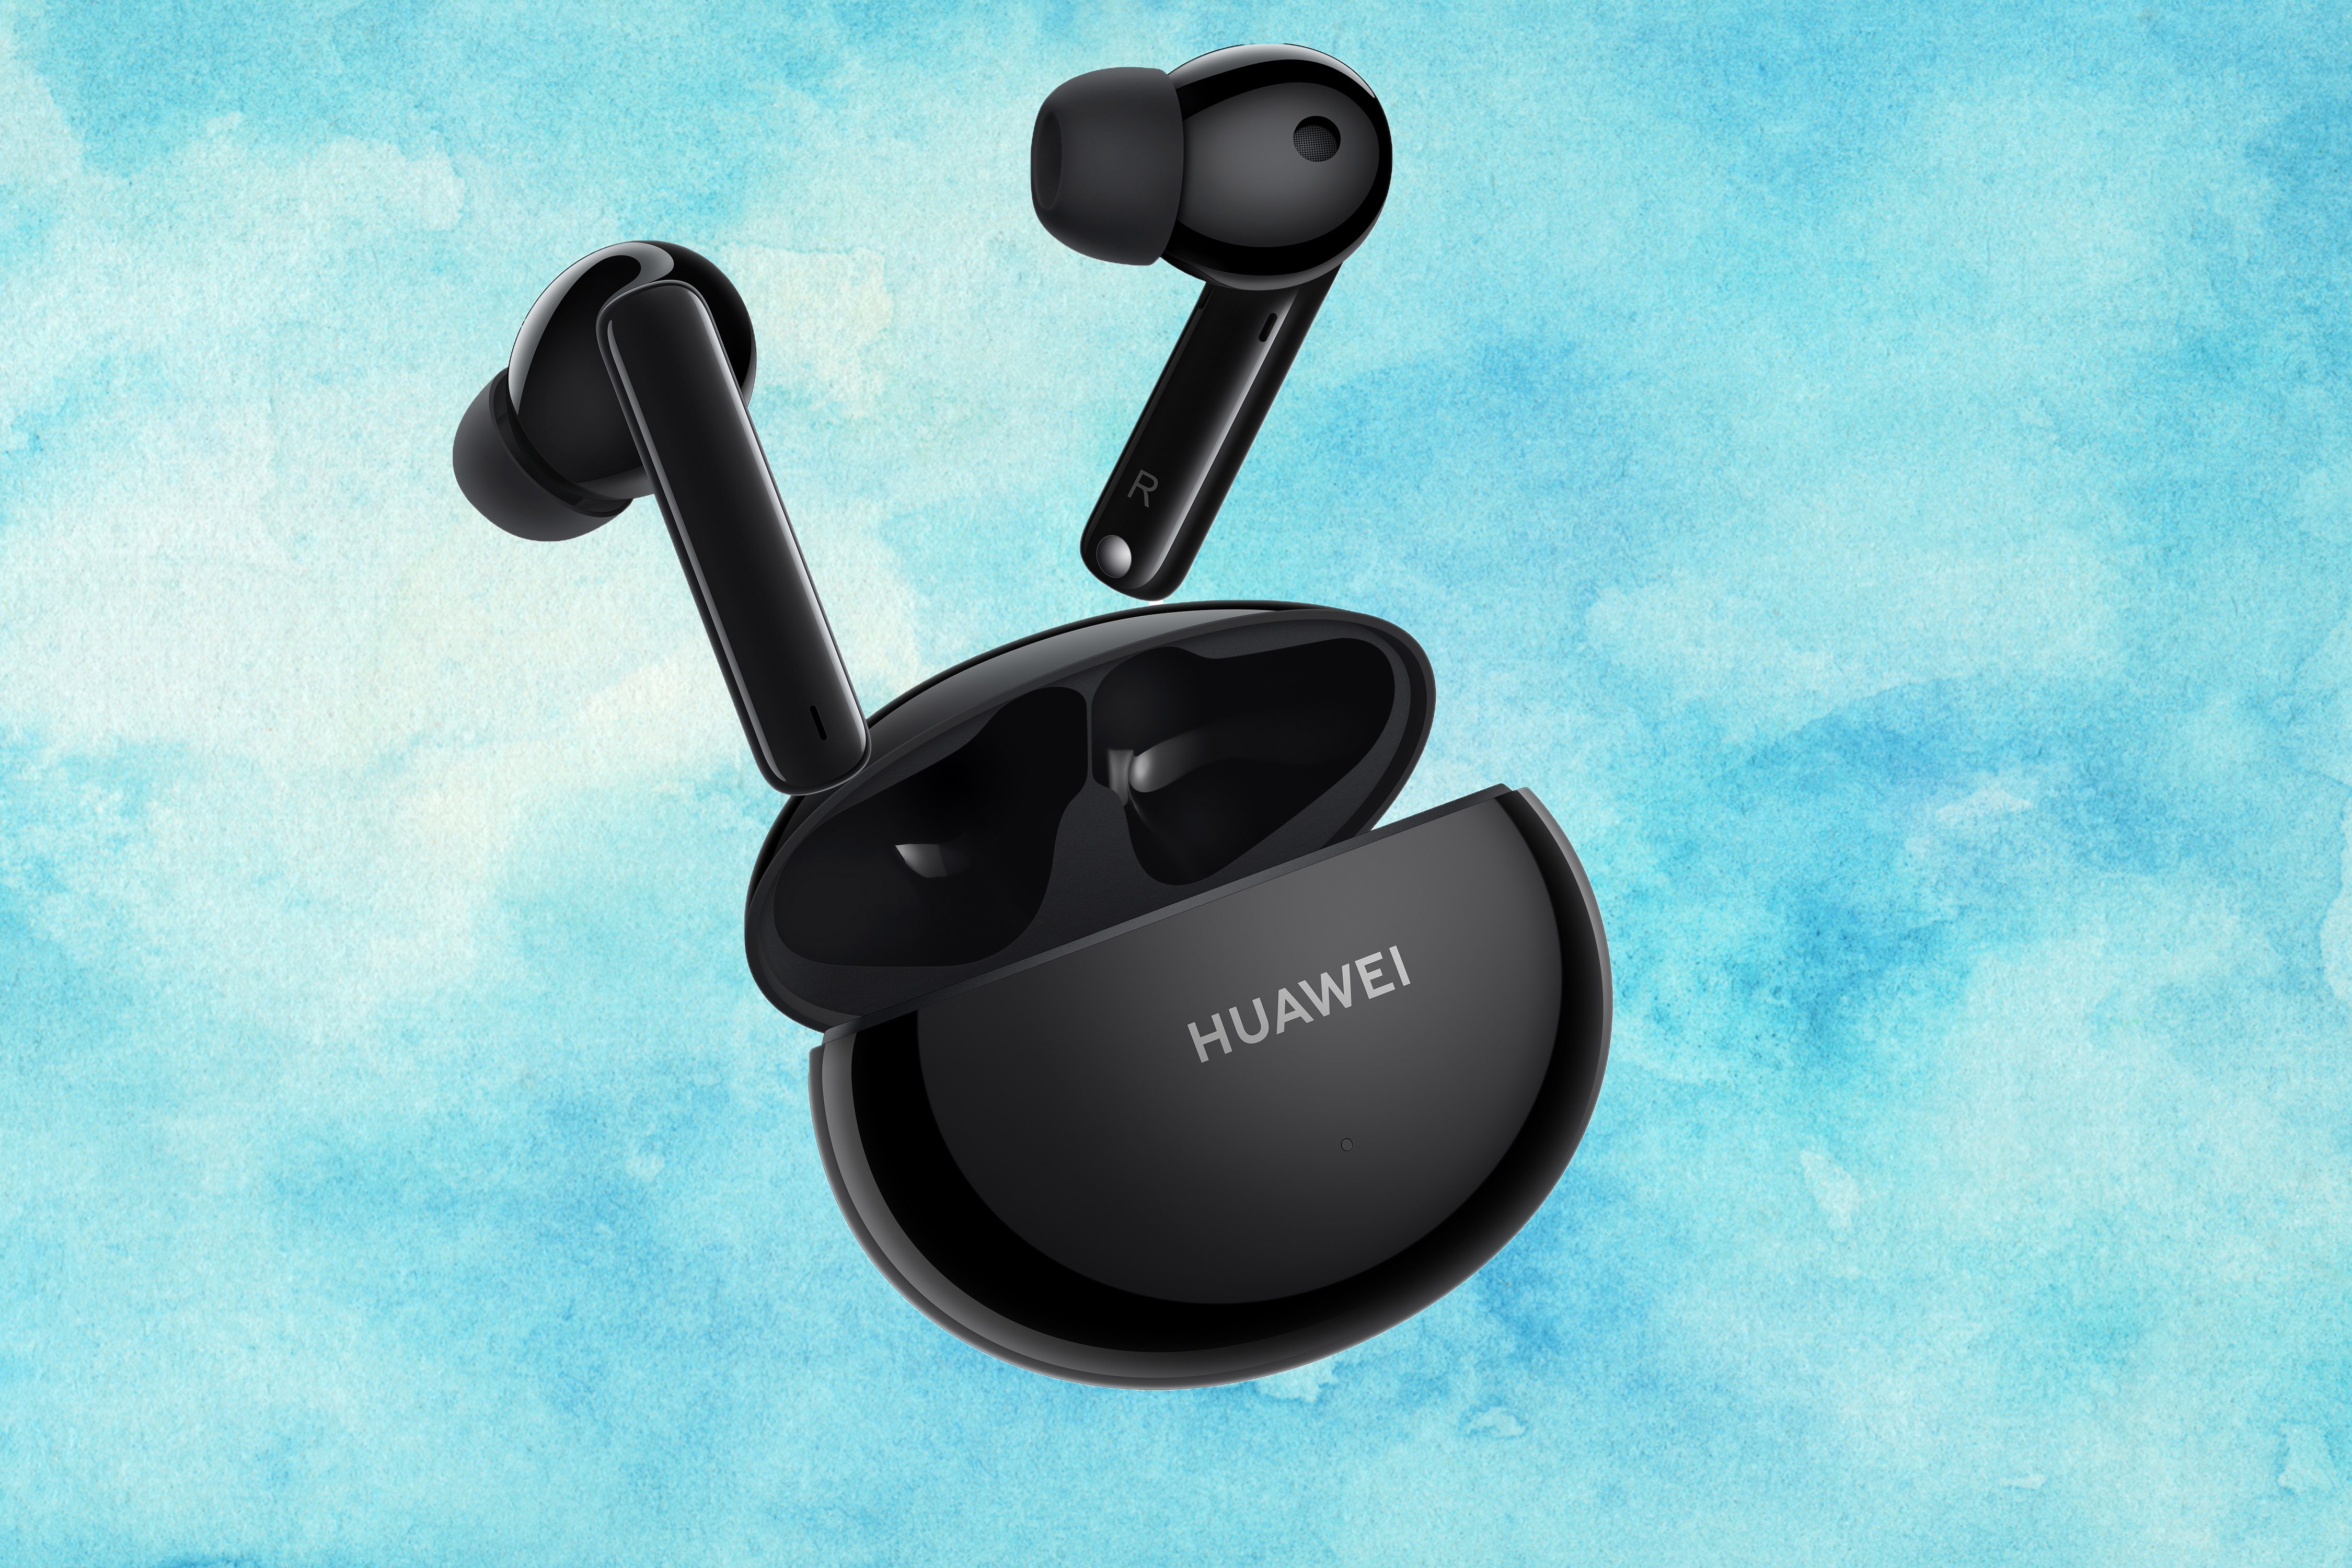 Así son los auriculares inalámbricos FreeBuds 4i de Huawei